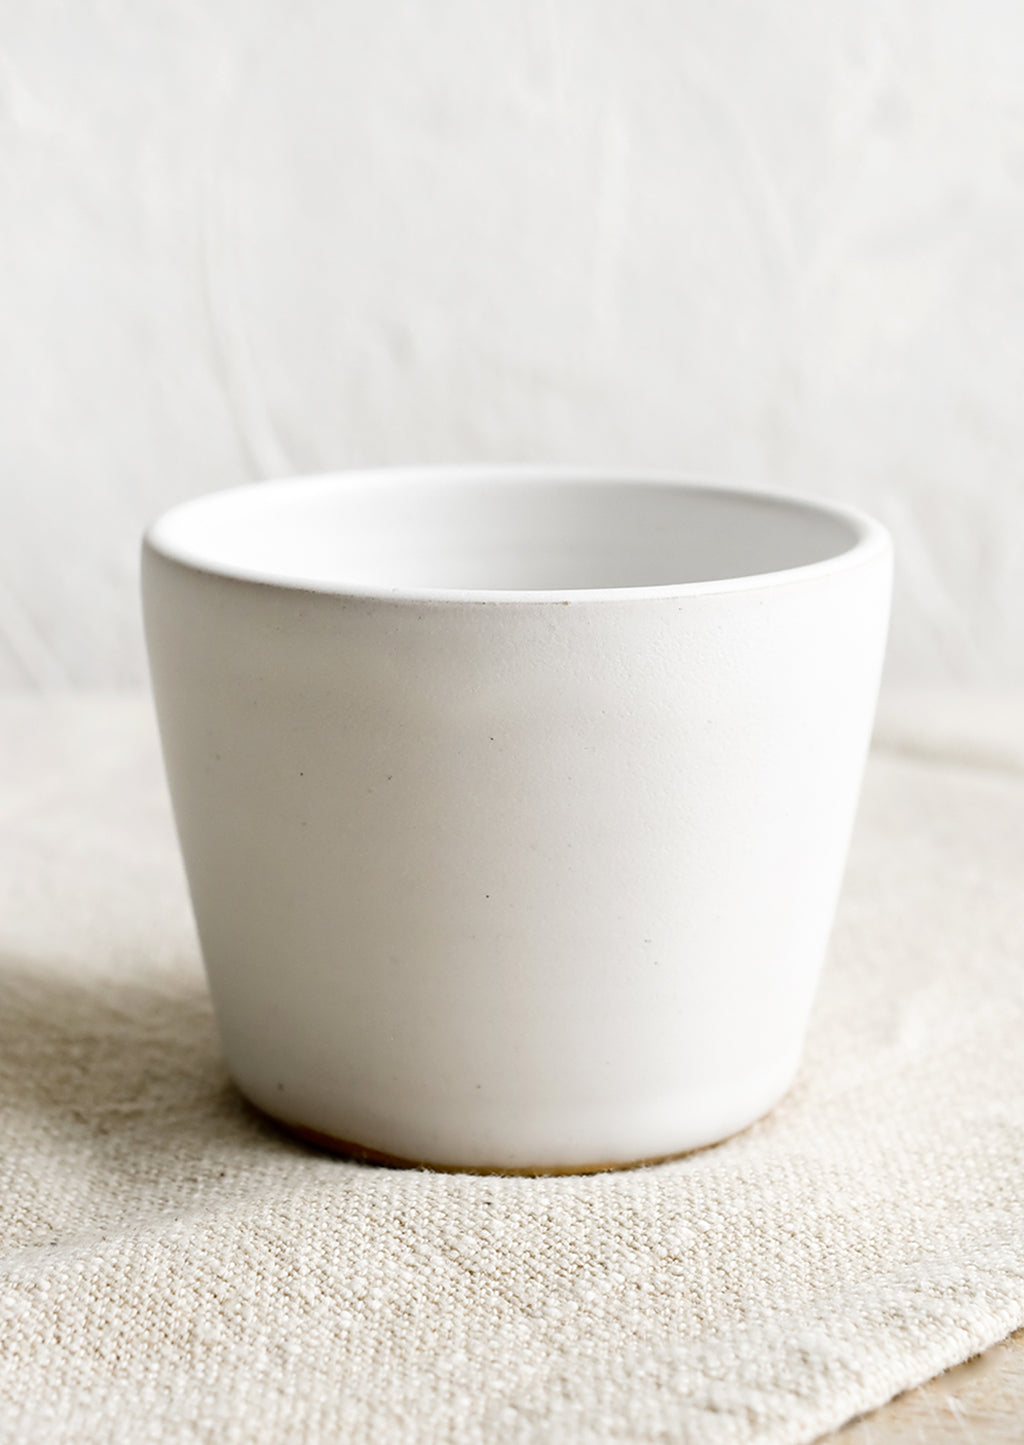 Matte White: A ceramic espresso cup in matte white.